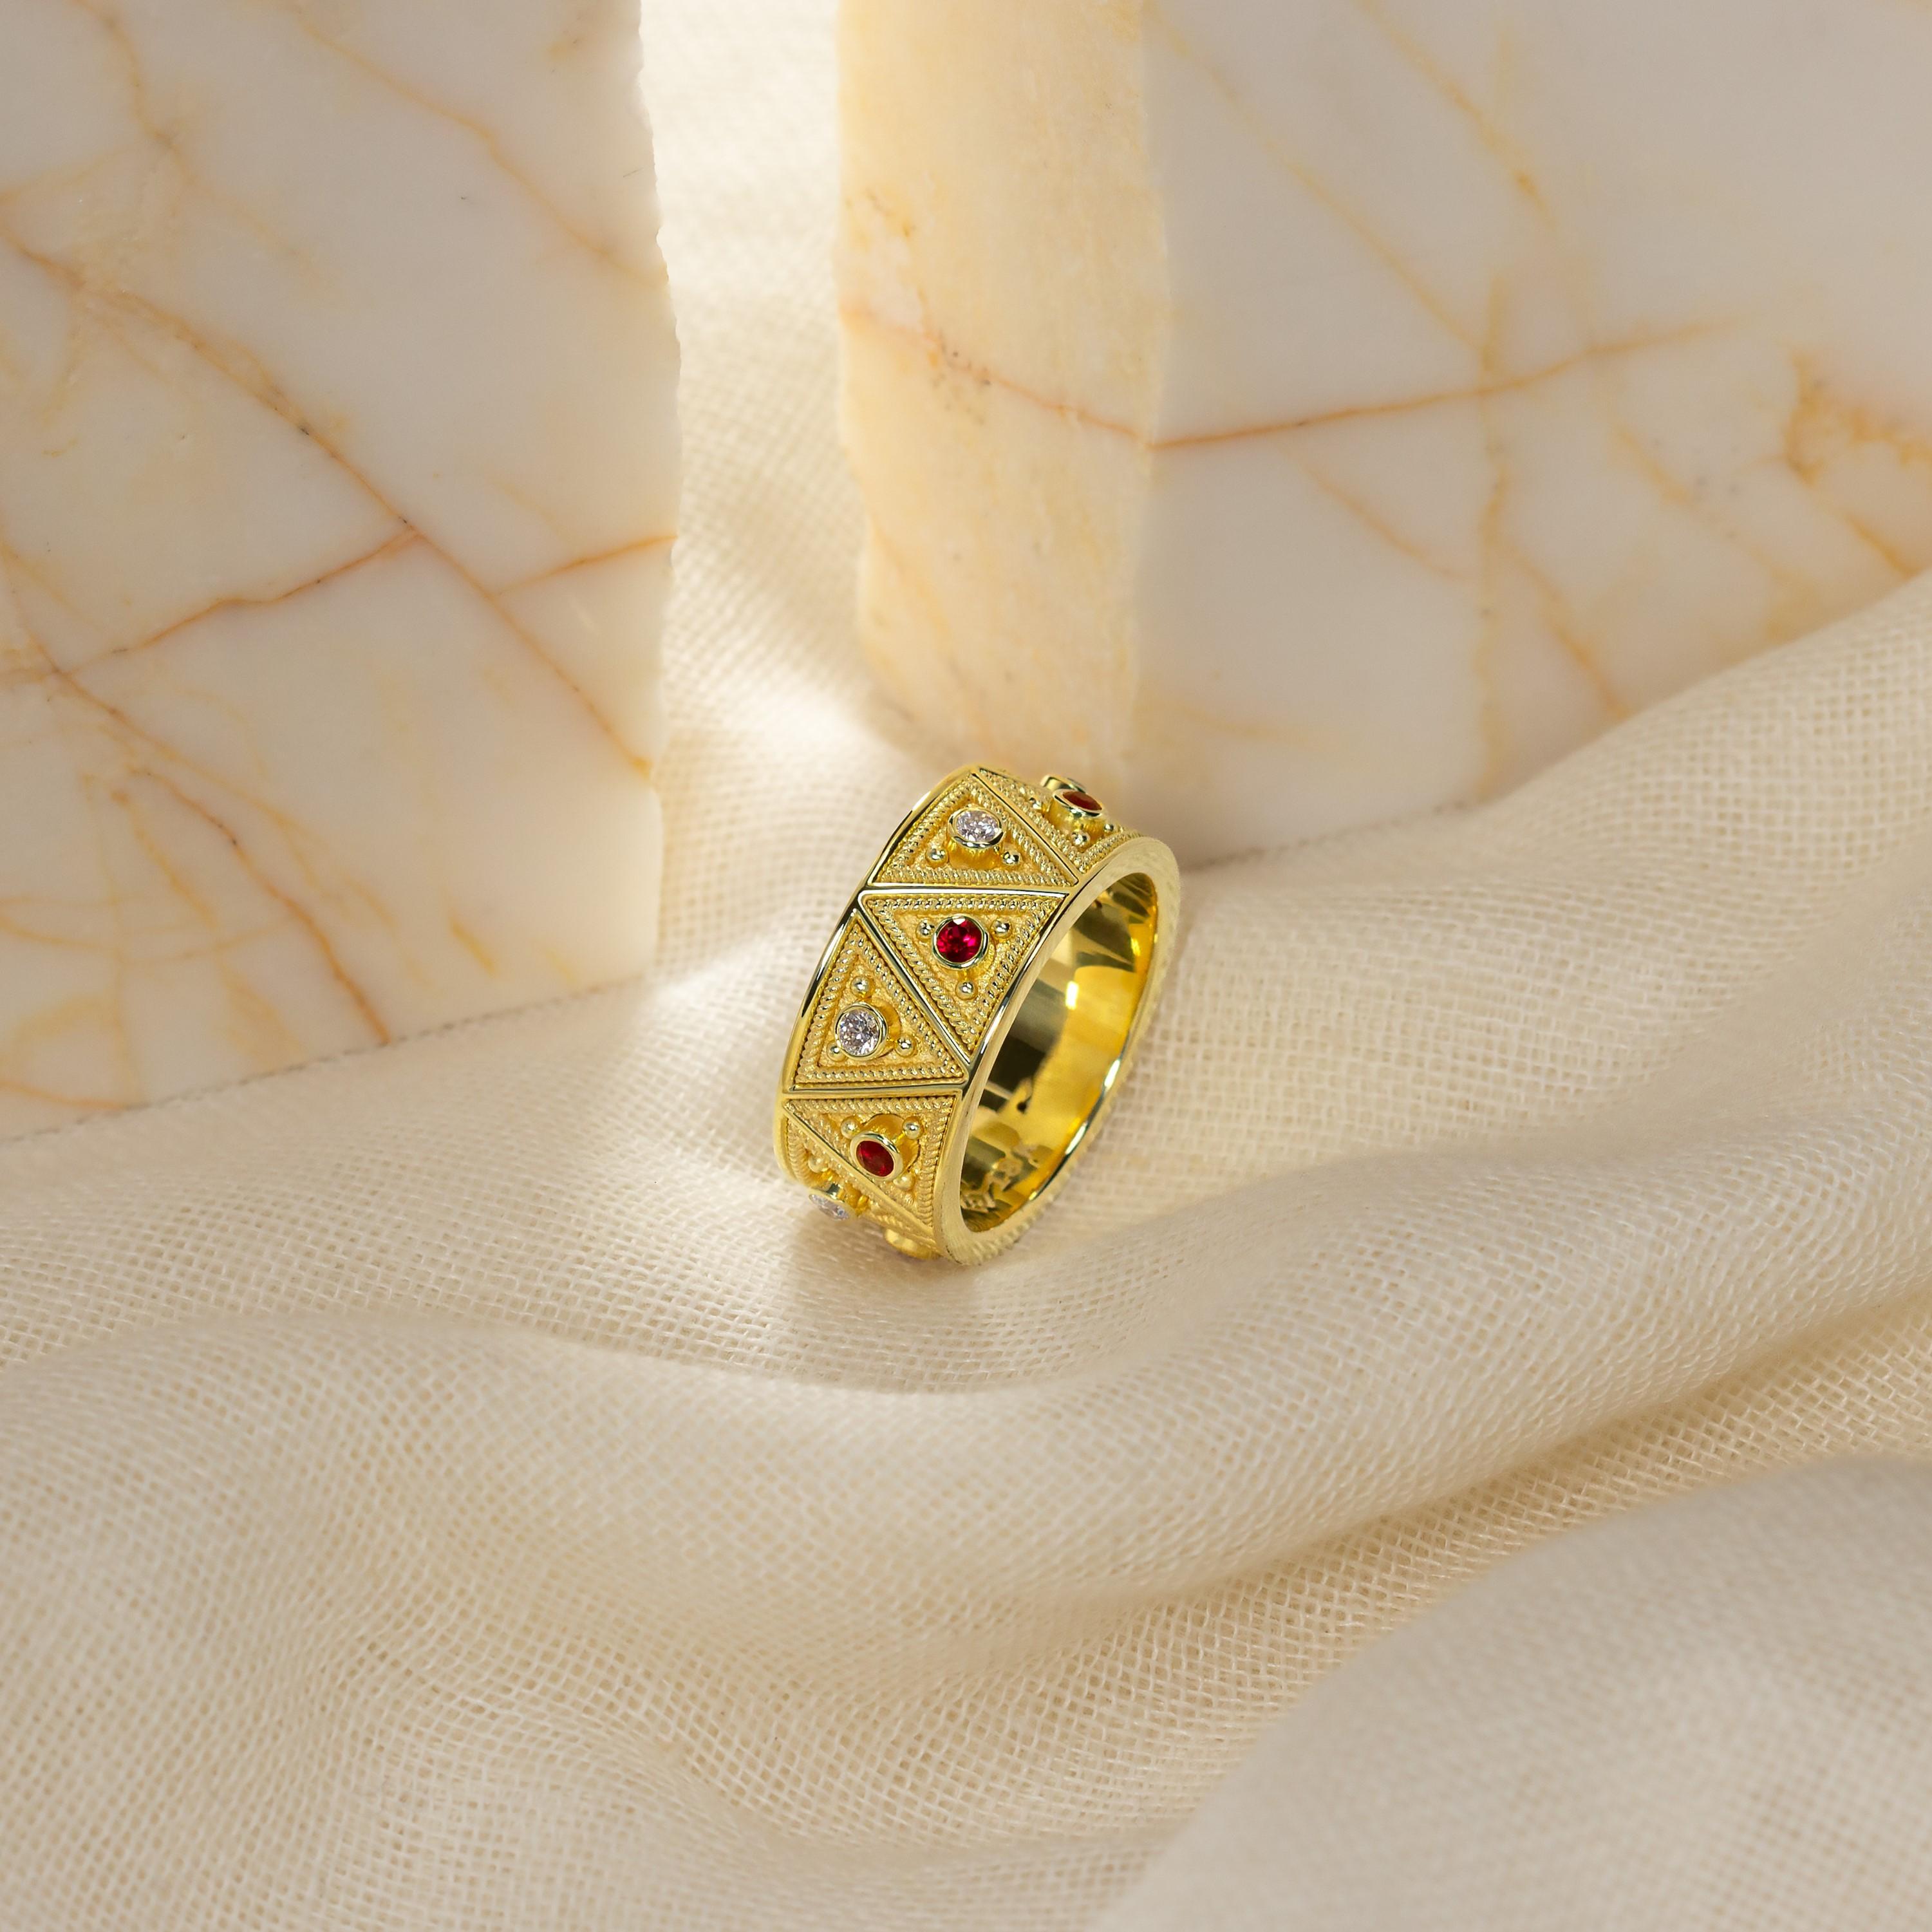 Ein Hauch von modernem Glamour mit unserem goldenen Ring mit Dreiecksmotiv, verziert mit der feurigen Anziehungskraft von Rubinen und dem brillanten Funkeln von Diamanten. Dieses einzigartig gestaltete Schmuckstück verbindet mühelos modernen Stil